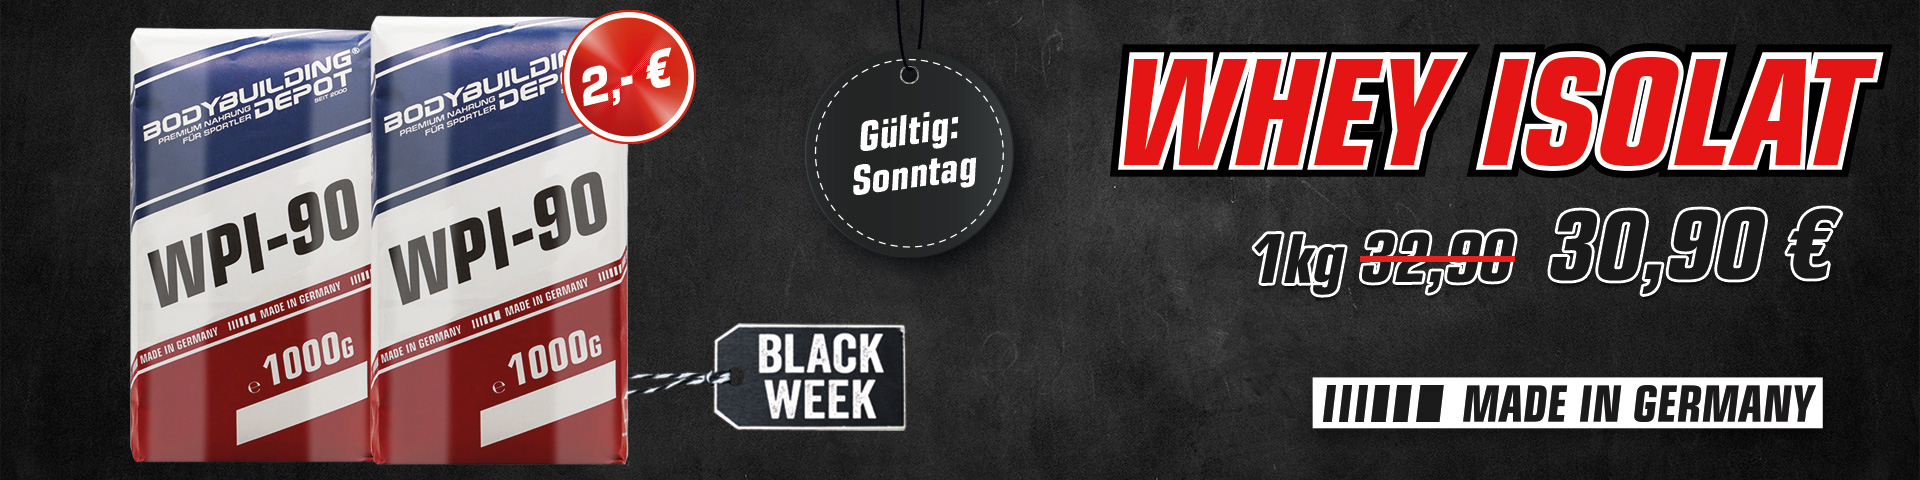 black-week-neue-version-sonntag.jpg